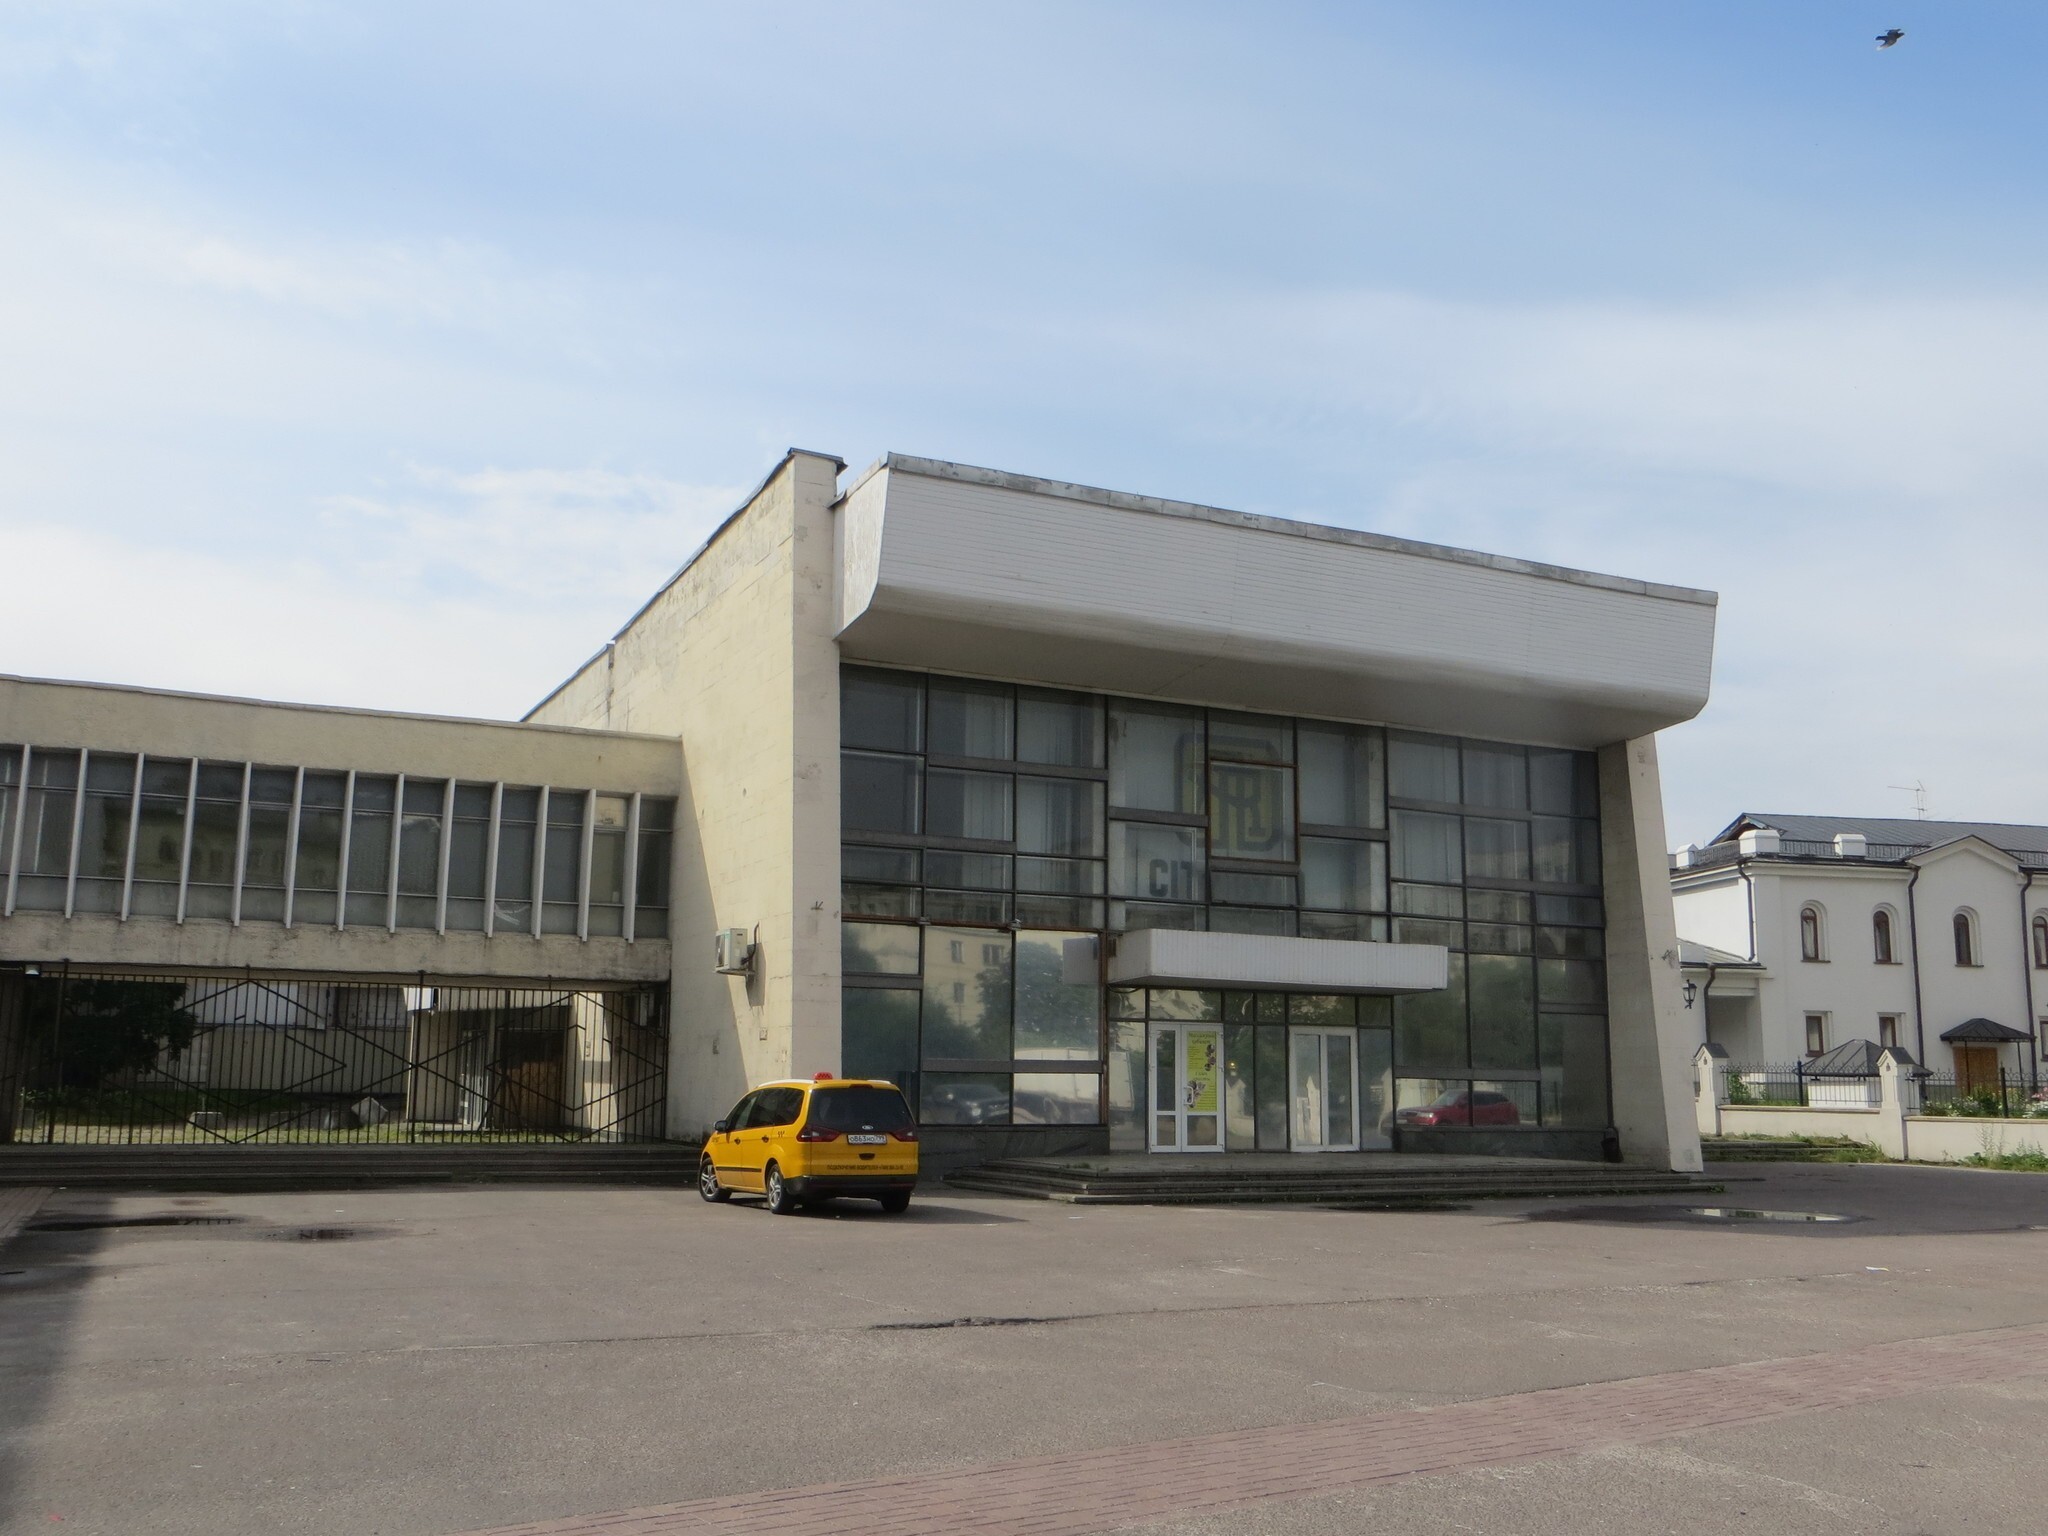 Здание театрального центра на дубровке. ЗИЛ культурный центр от Дубровки.